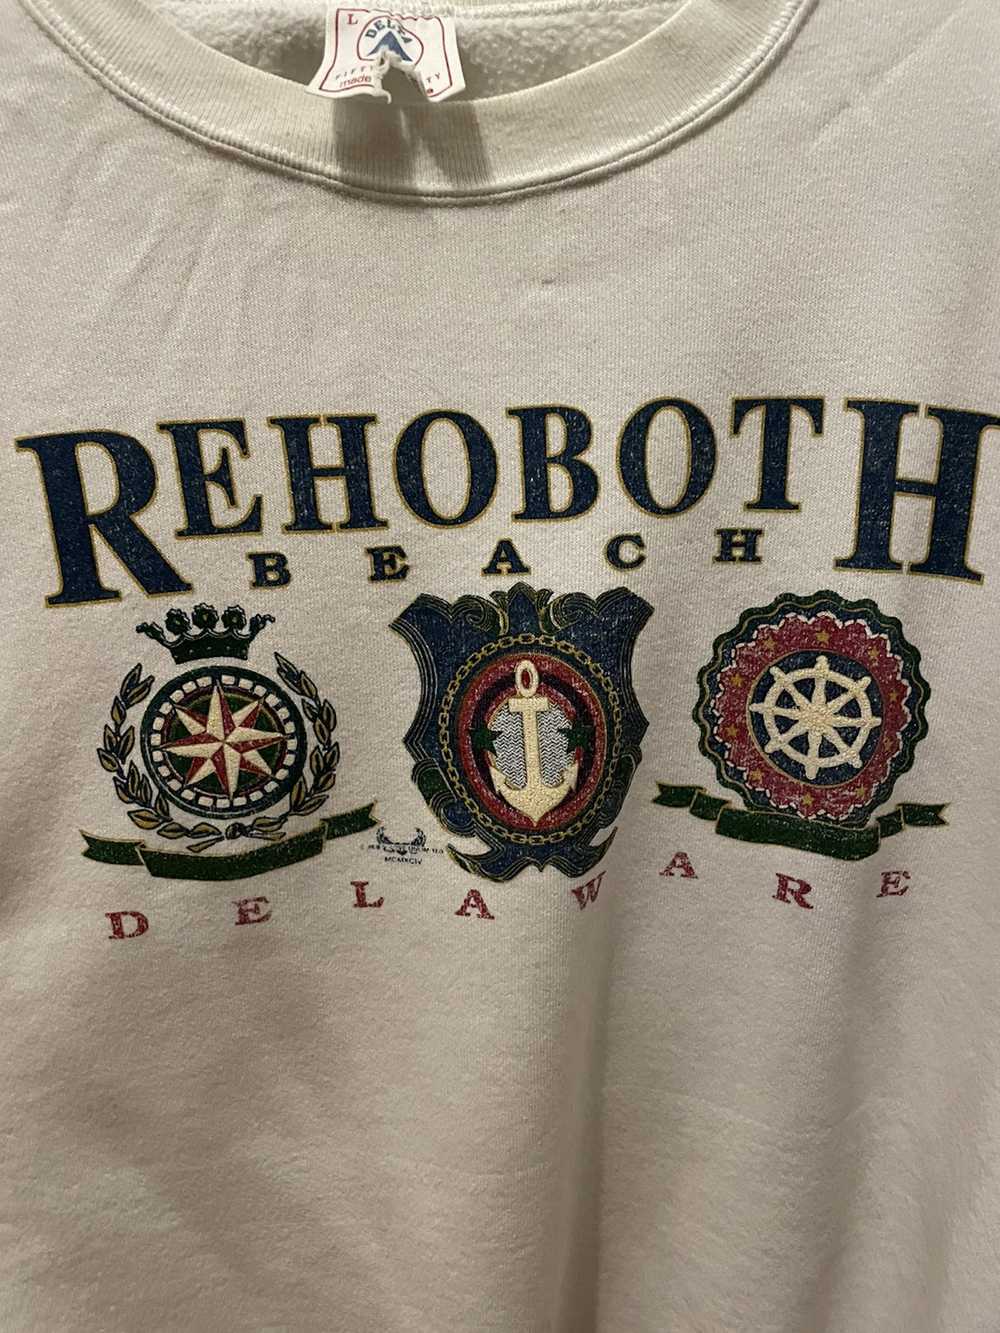 Vintage Vintage Rehoboth beach Delaware sweatshirt - image 3